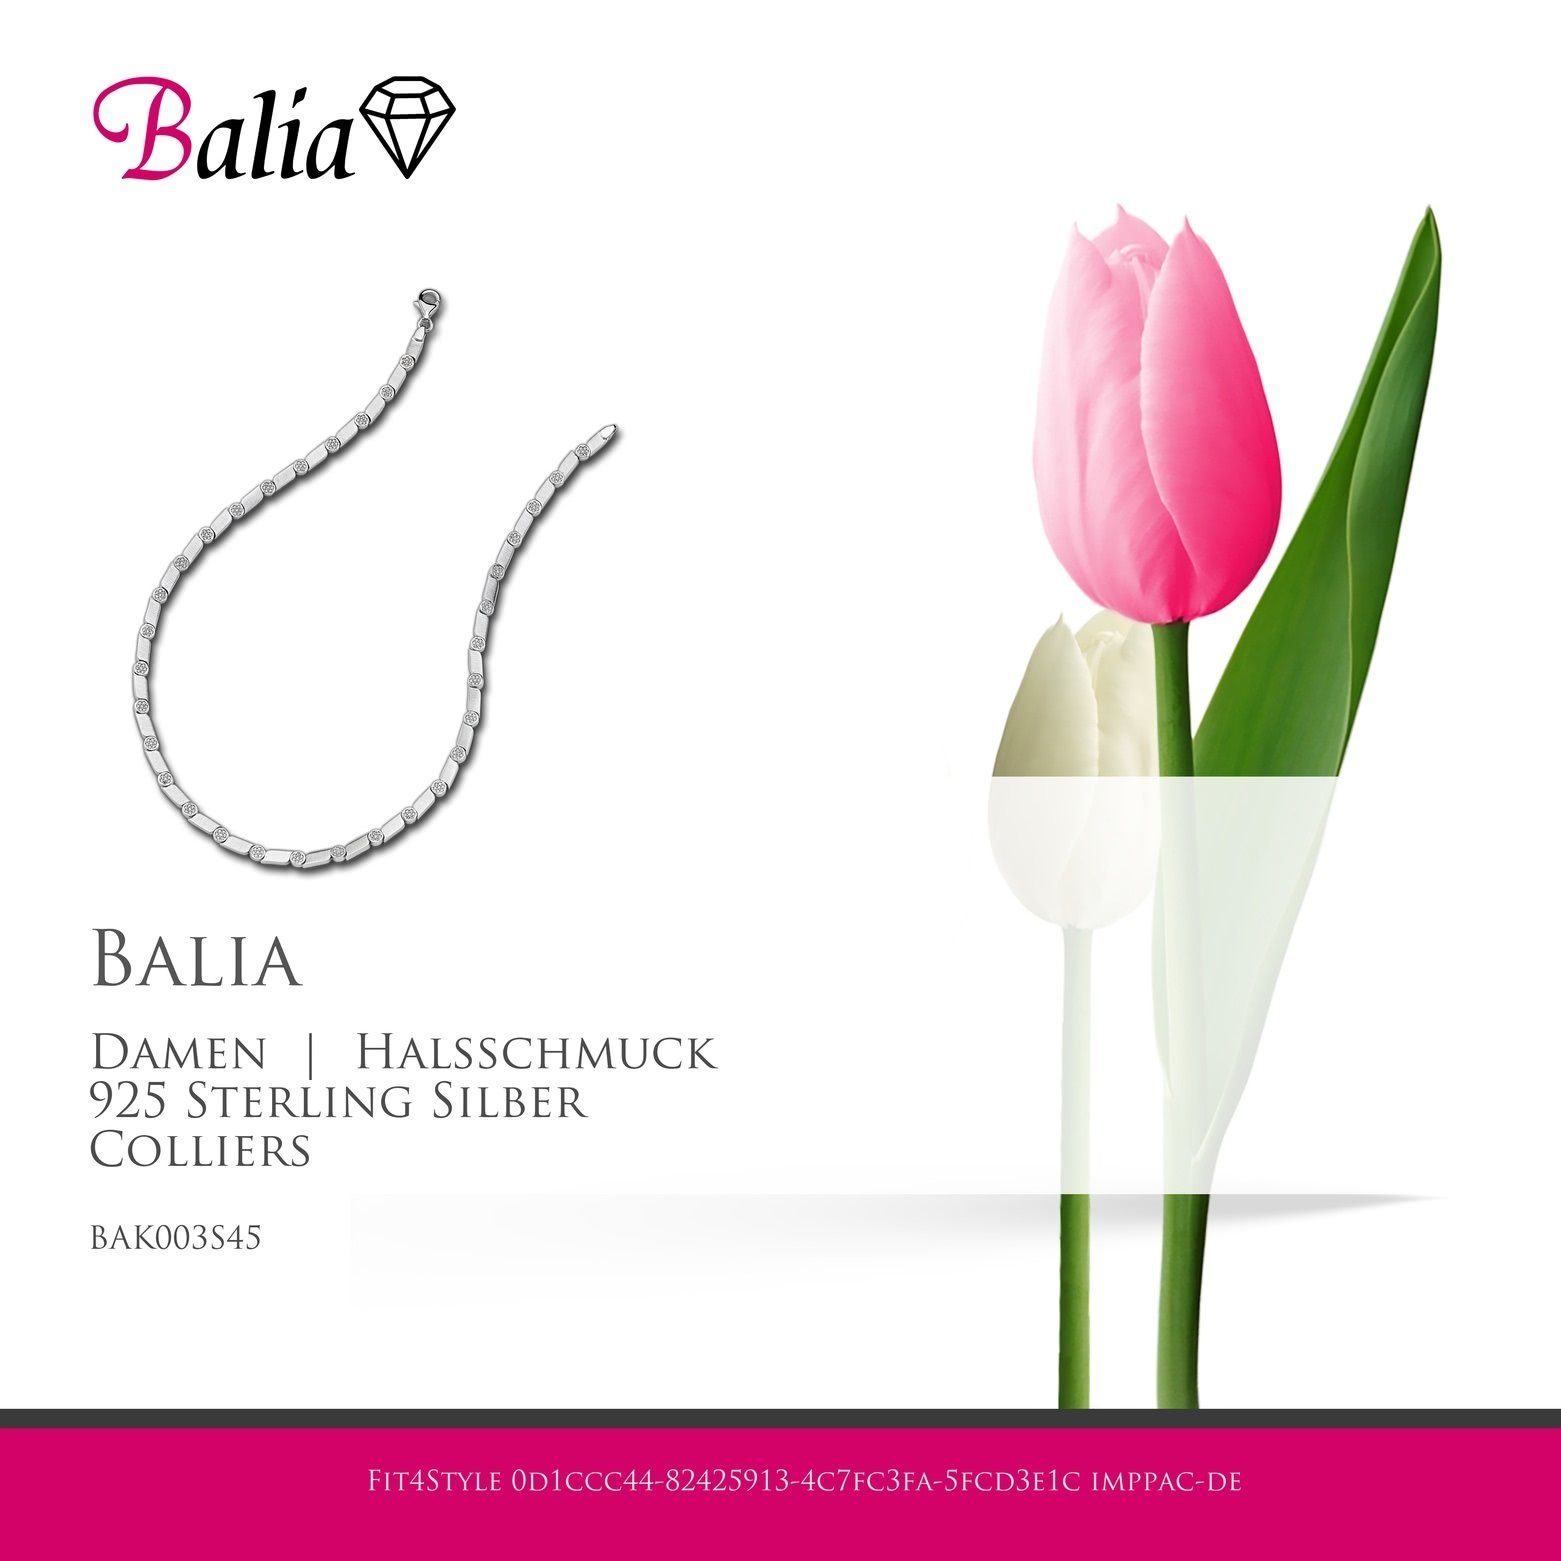 Collier Balia Sterling silber Silber, matt-glanz Colliers, Fantasie Balia Damen Halskette 925 für Farbe: (Collier), Damen Halsketten